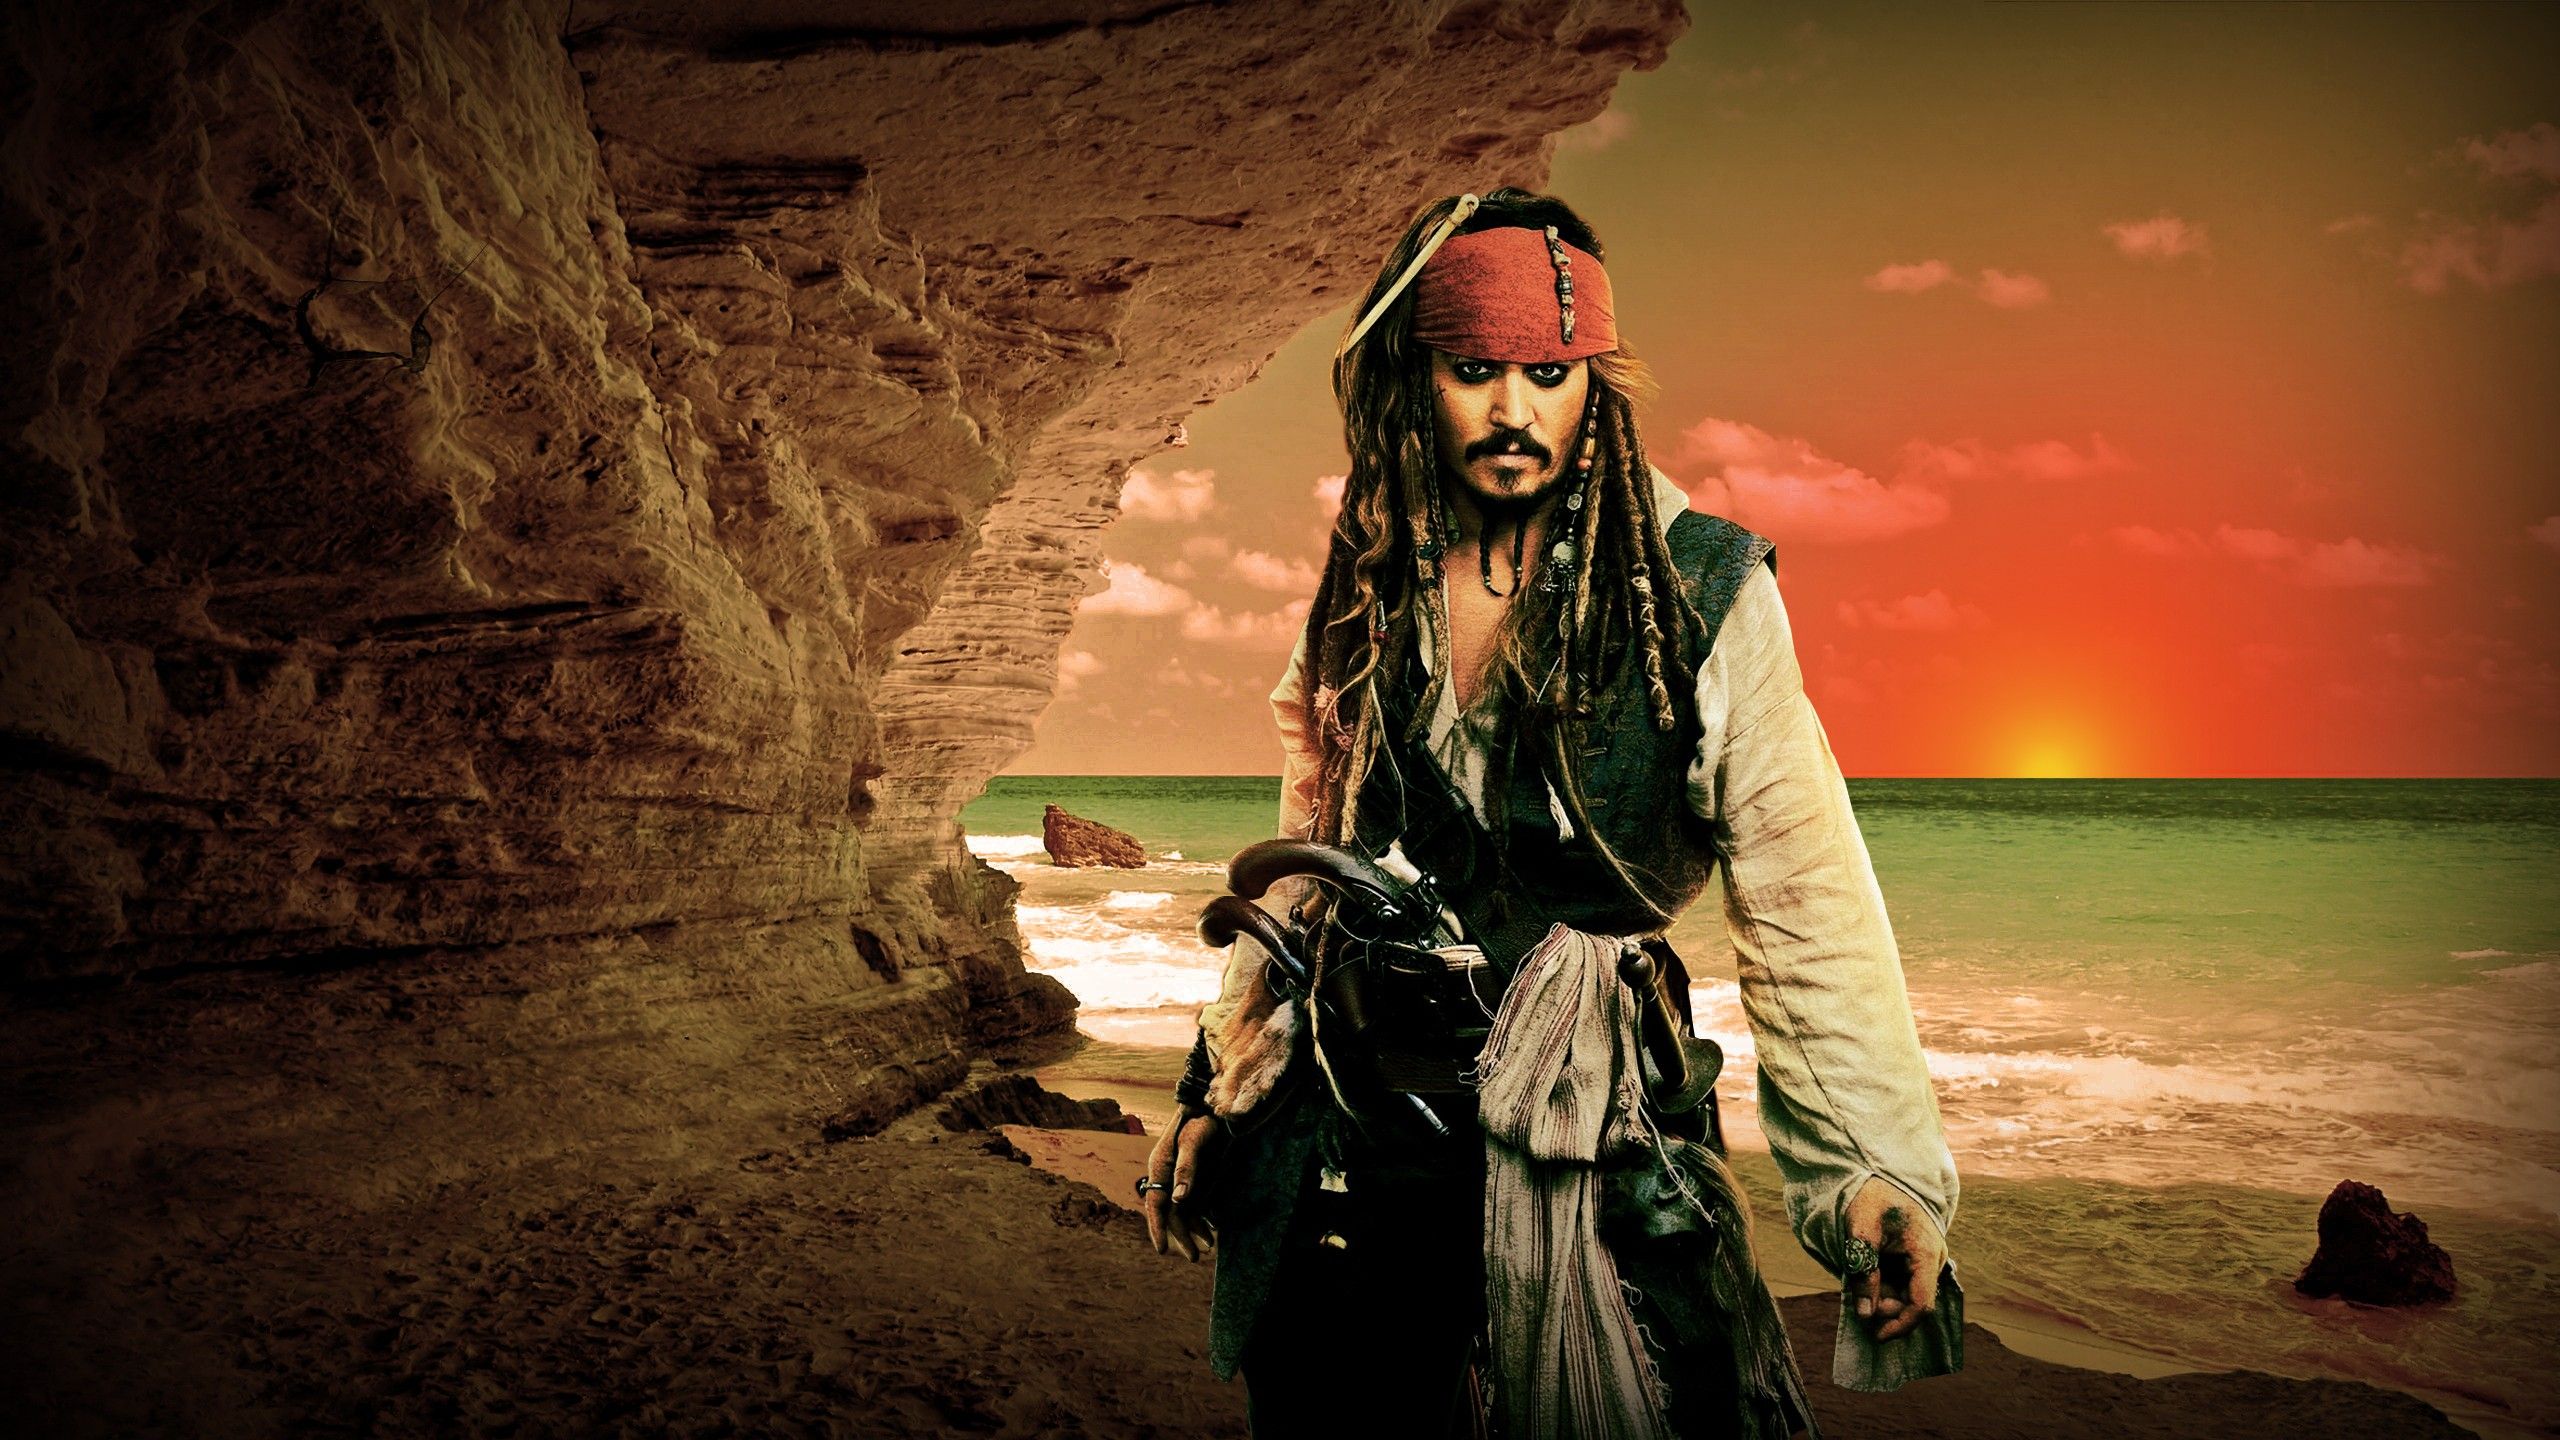 387 Fondos de pantalla de Piratas del Caribe HD | Imágenes de fondo